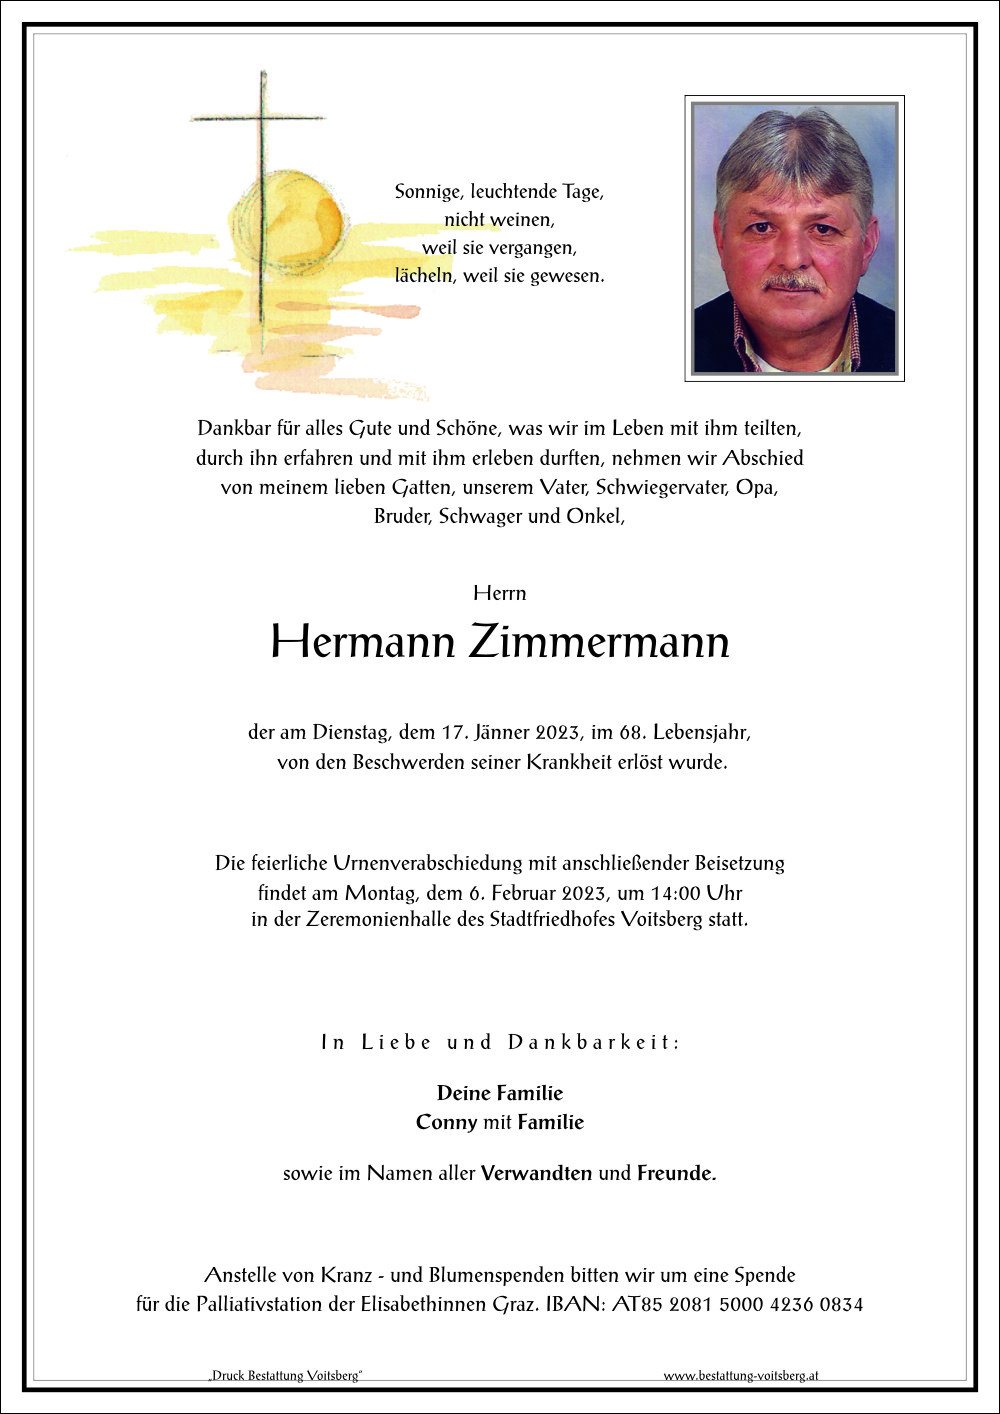 Hermann Zimmermann